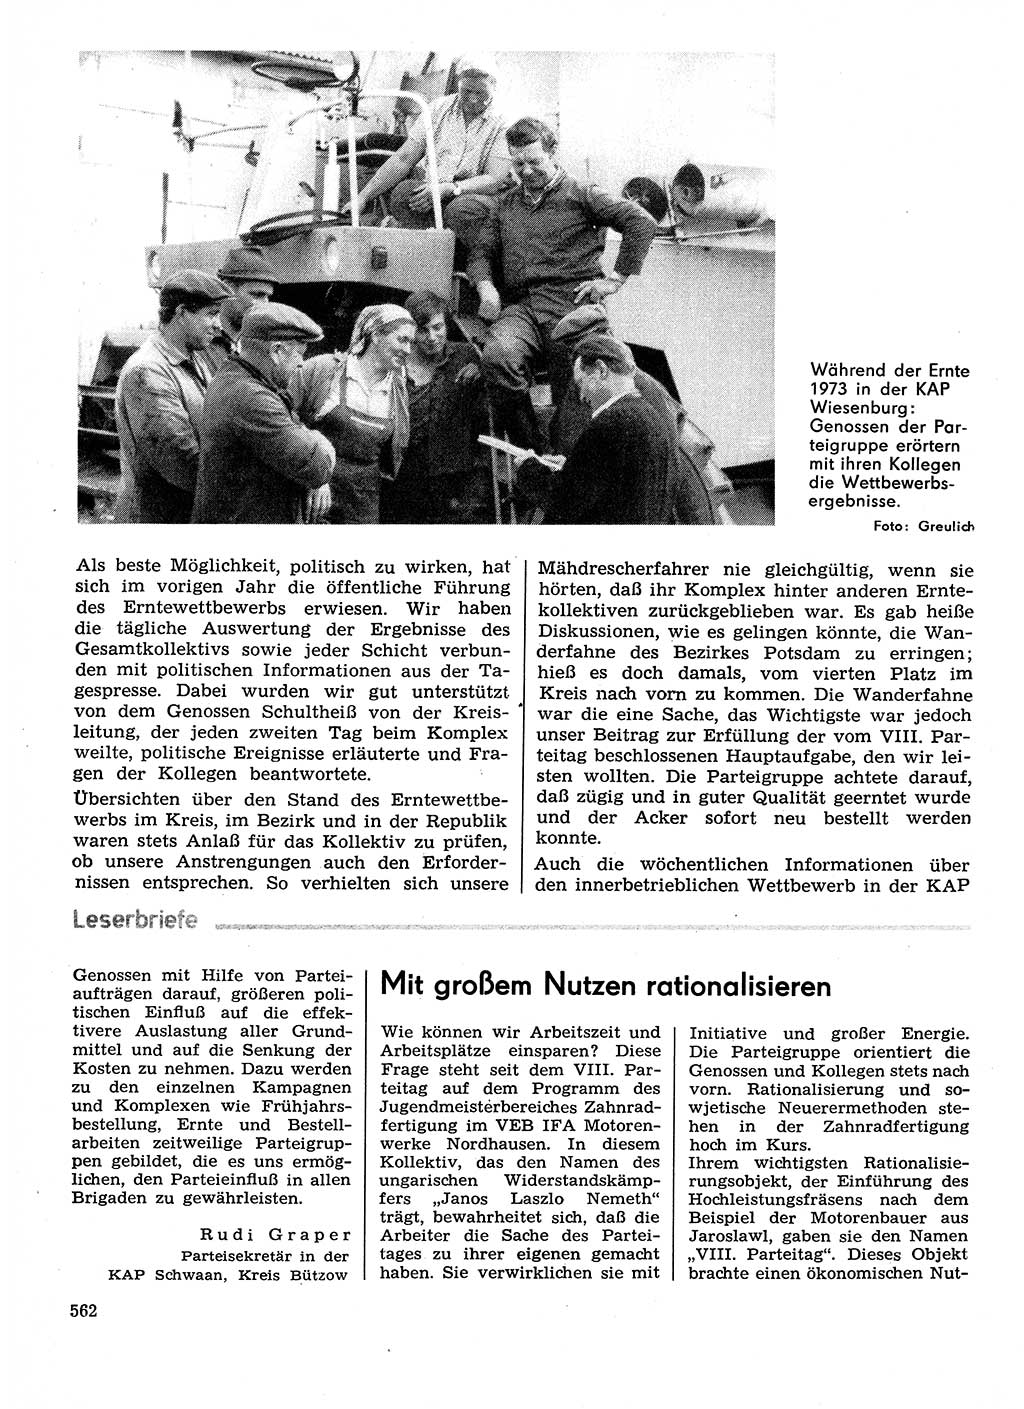 Neuer Weg (NW), Organ des Zentralkomitees (ZK) der SED (Sozialistische Einheitspartei Deutschlands) für Fragen des Parteilebens, 29. Jahrgang [Deutsche Demokratische Republik (DDR)] 1974, Seite 562 (NW ZK SED DDR 1974, S. 562)